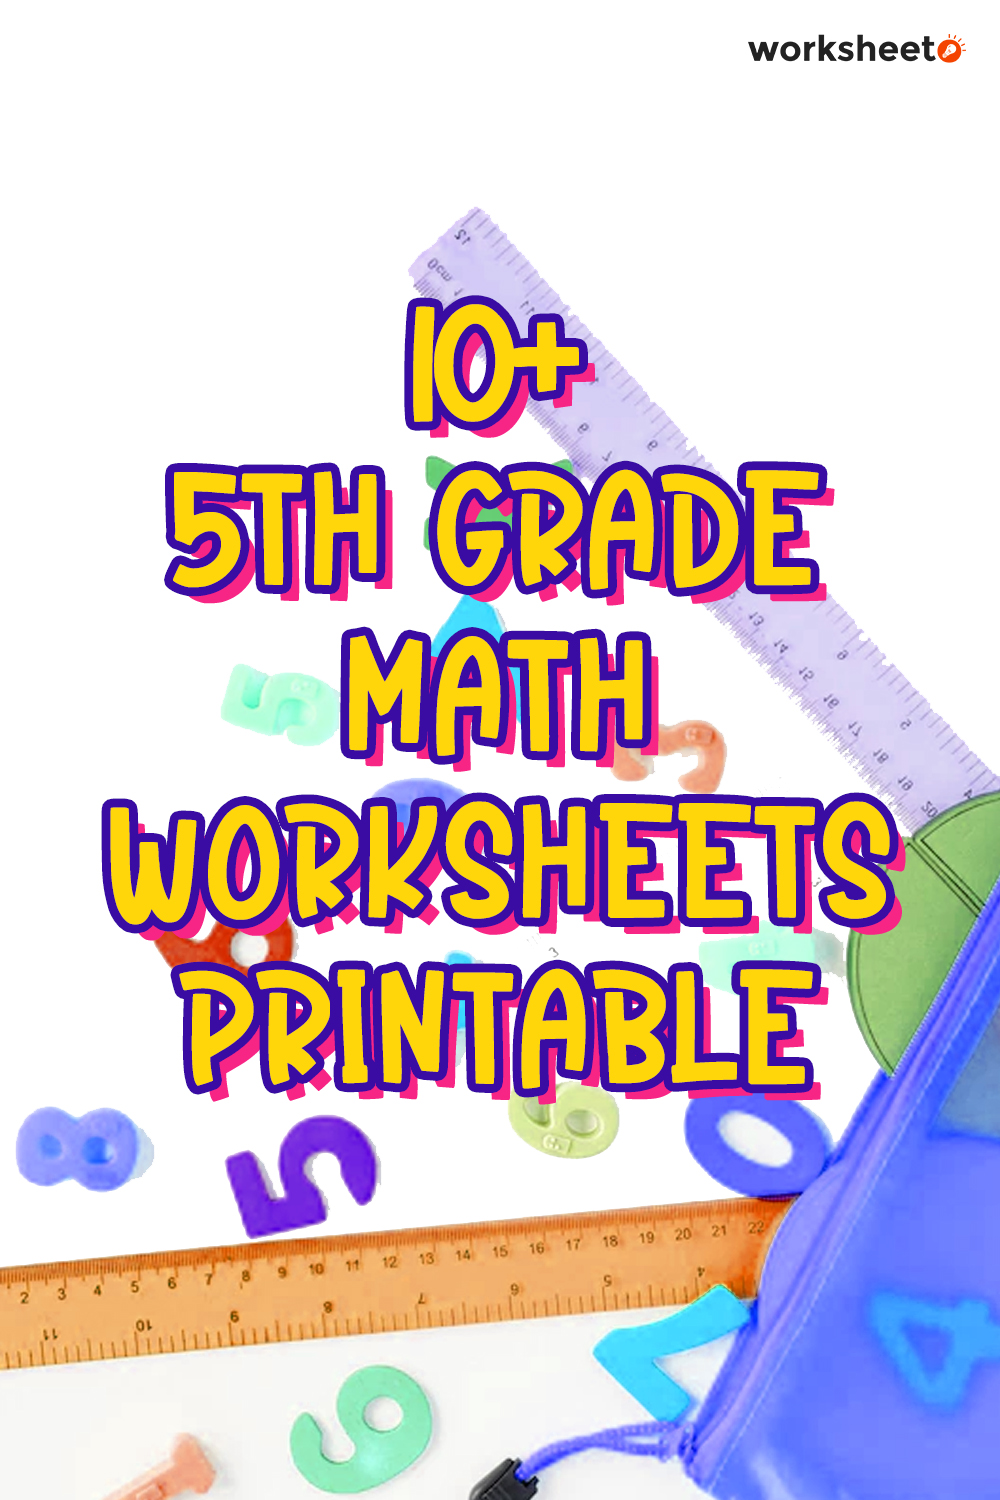 11-5th-grade-math-worksheets-printable-free-pdf-at-worksheeto